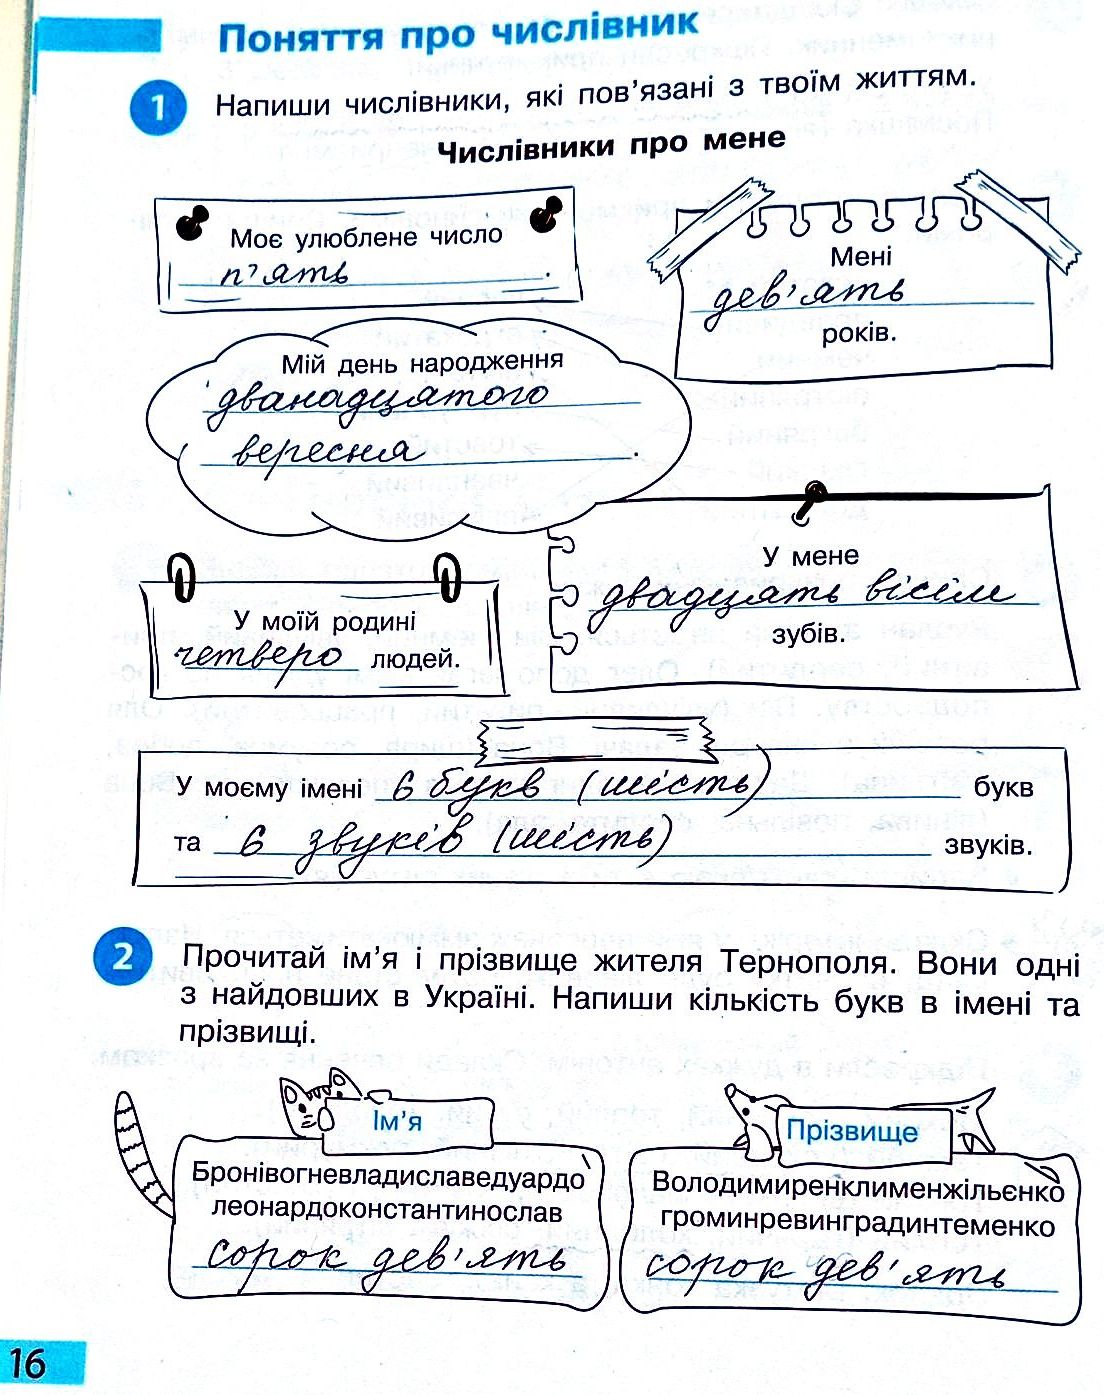 Сторінка 16 частина 2 гдз 3 клас робочий зошит українська мова Большакова